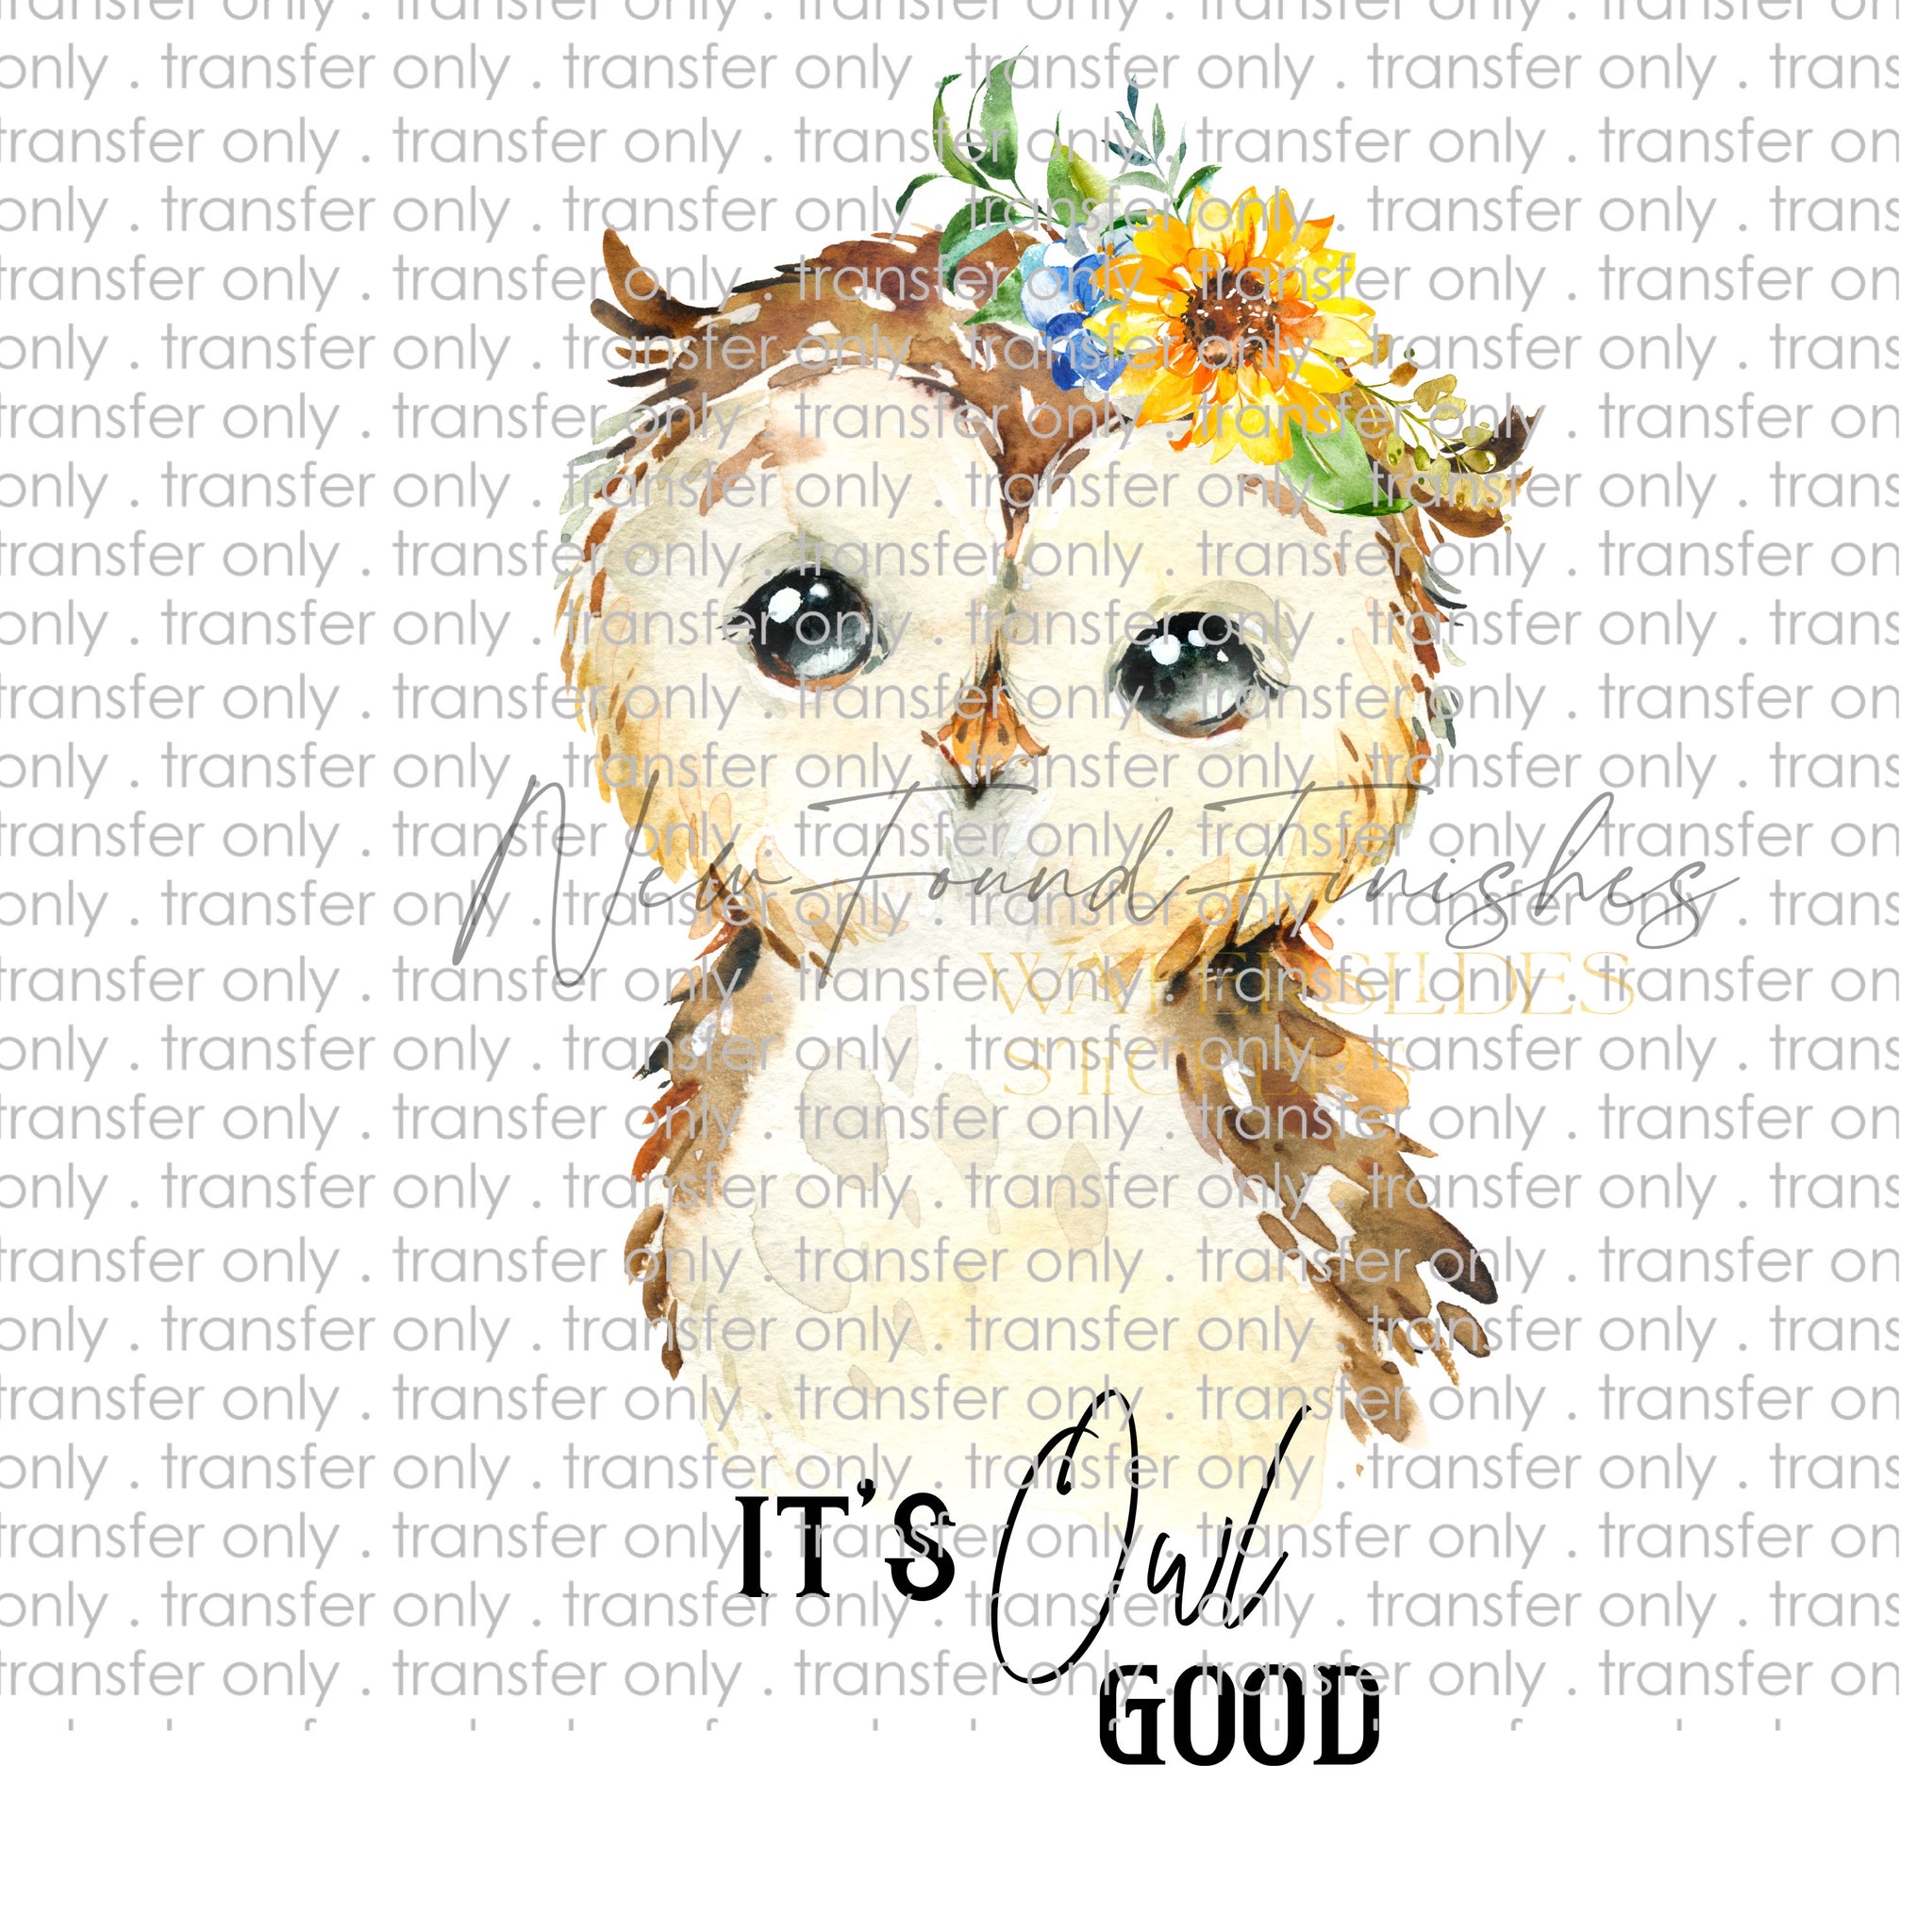 It’s owl good